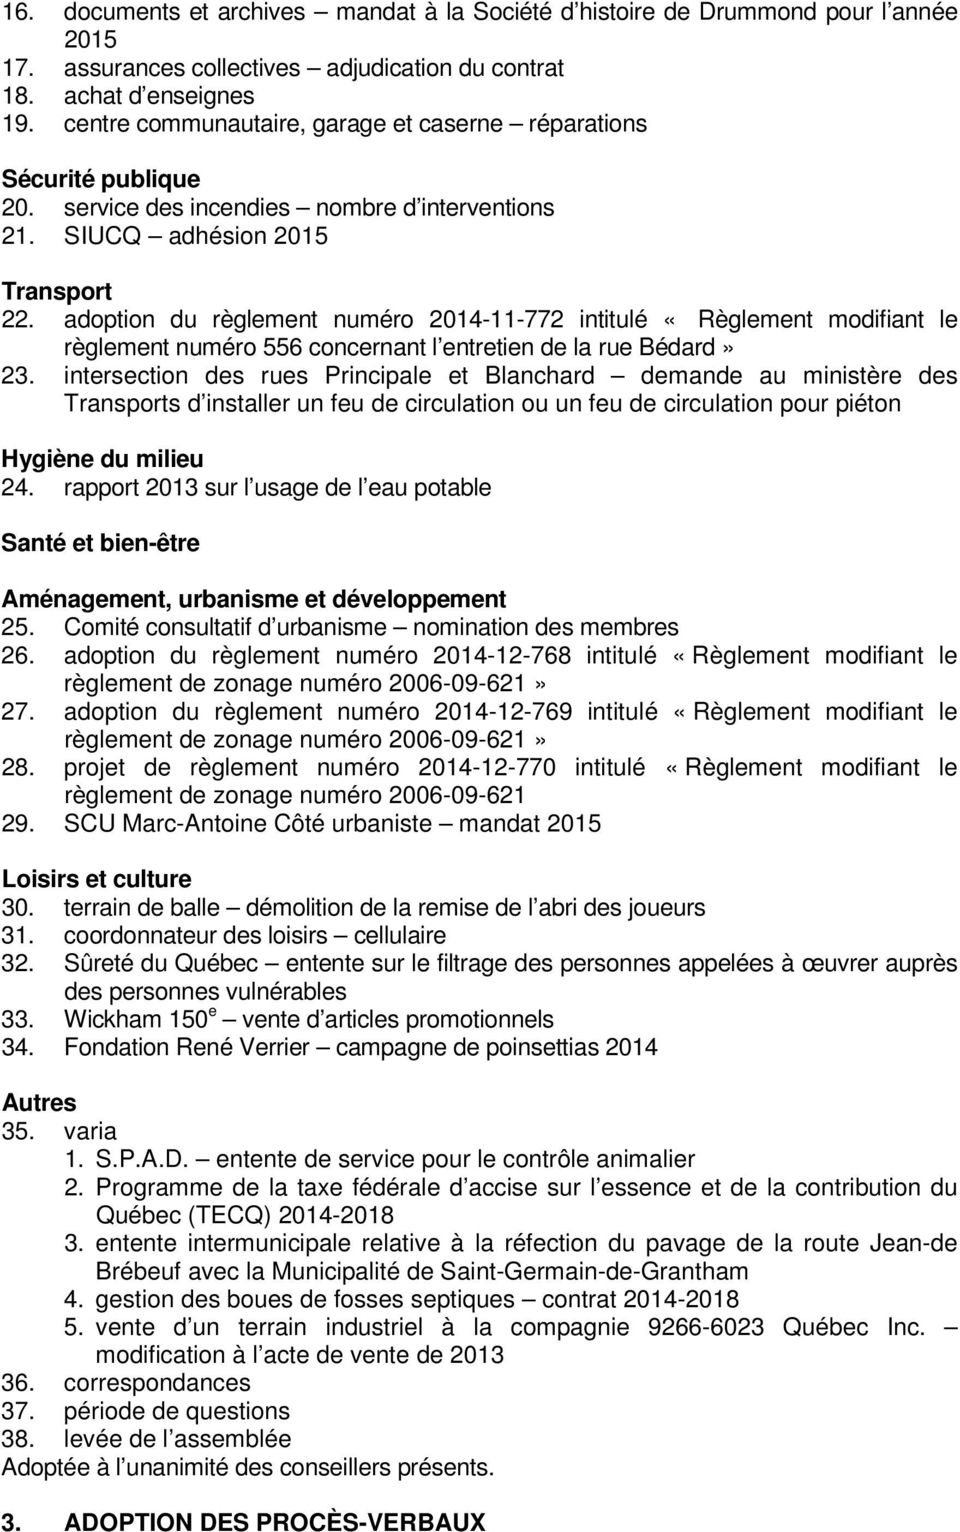 adoption du règlement numéro 2014-11-772 intitulé «Règlement modifiant le règlement numéro 556 concernant l entretien de la rue Bédard» 23.